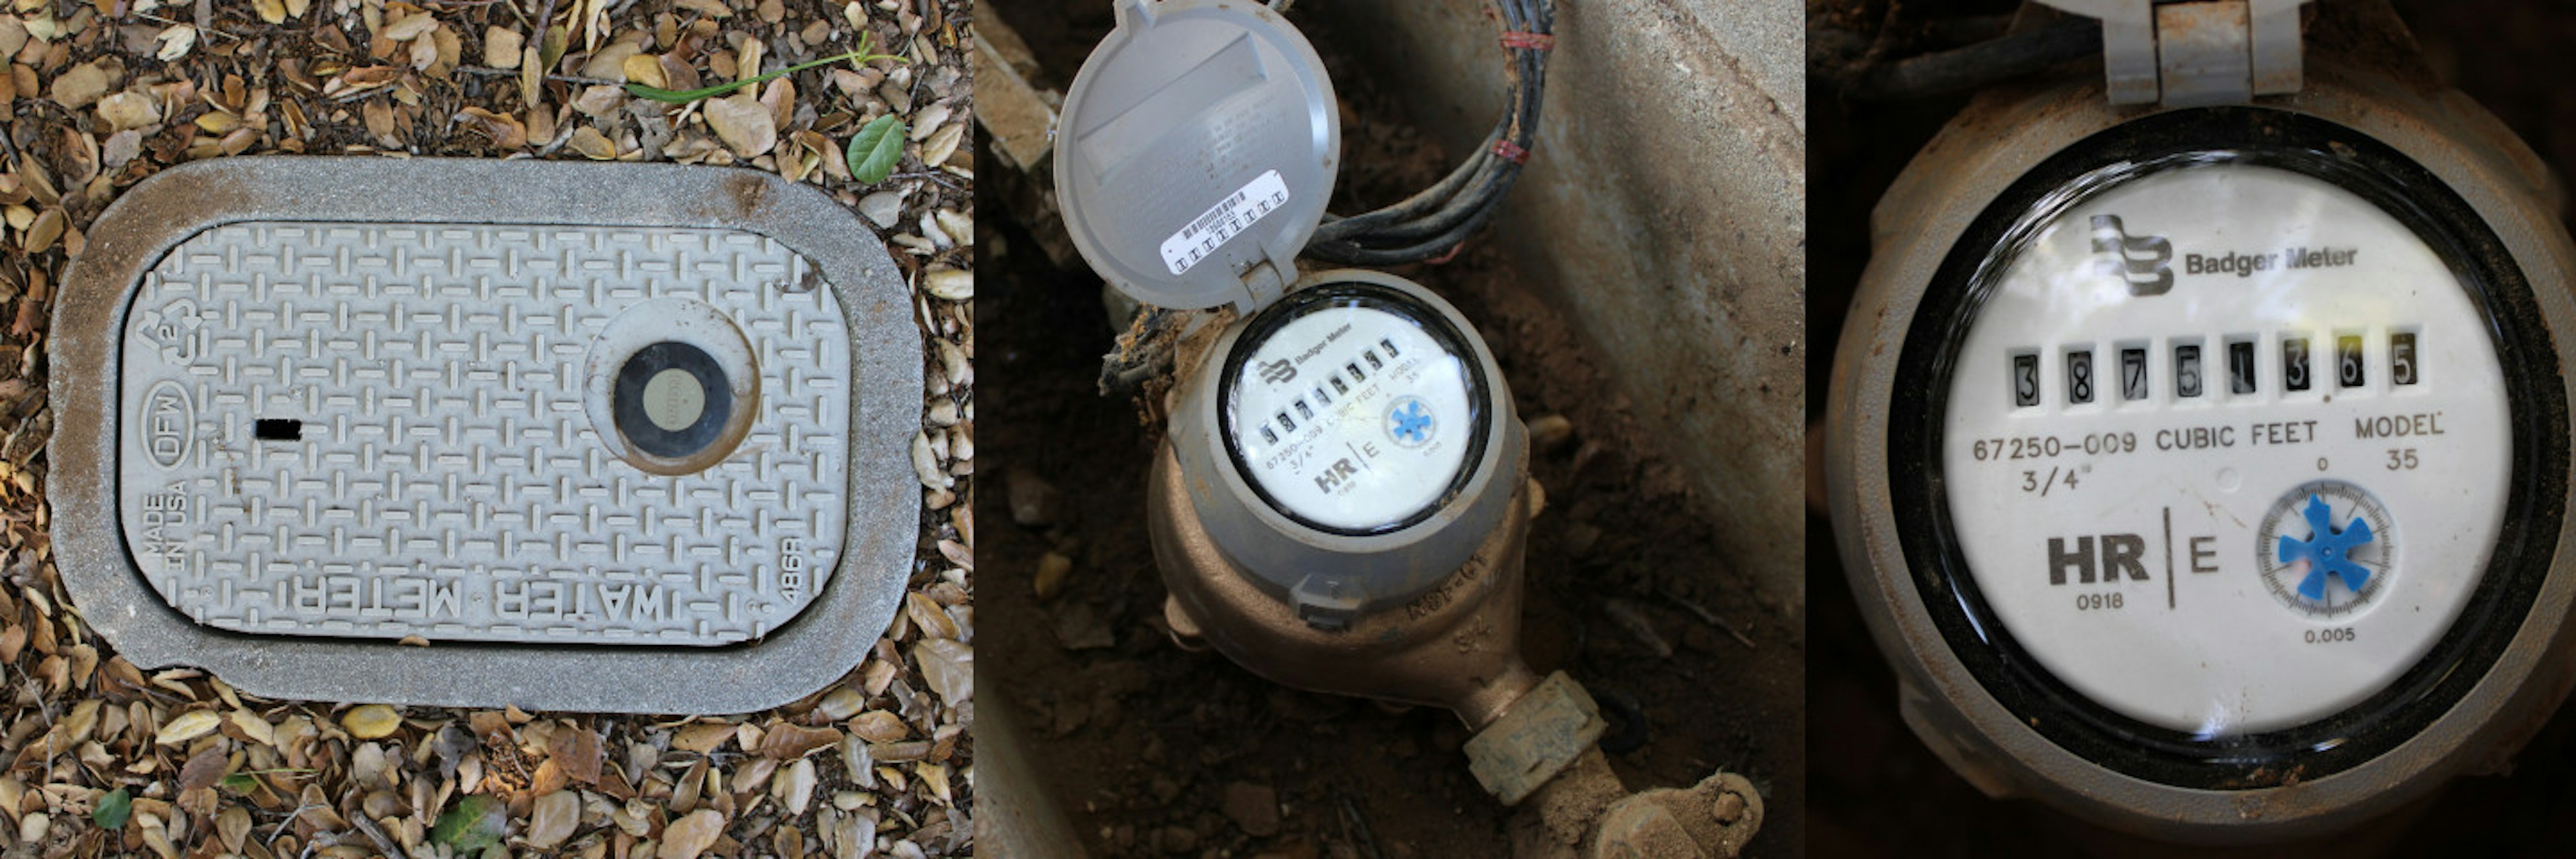 Various Water Meters